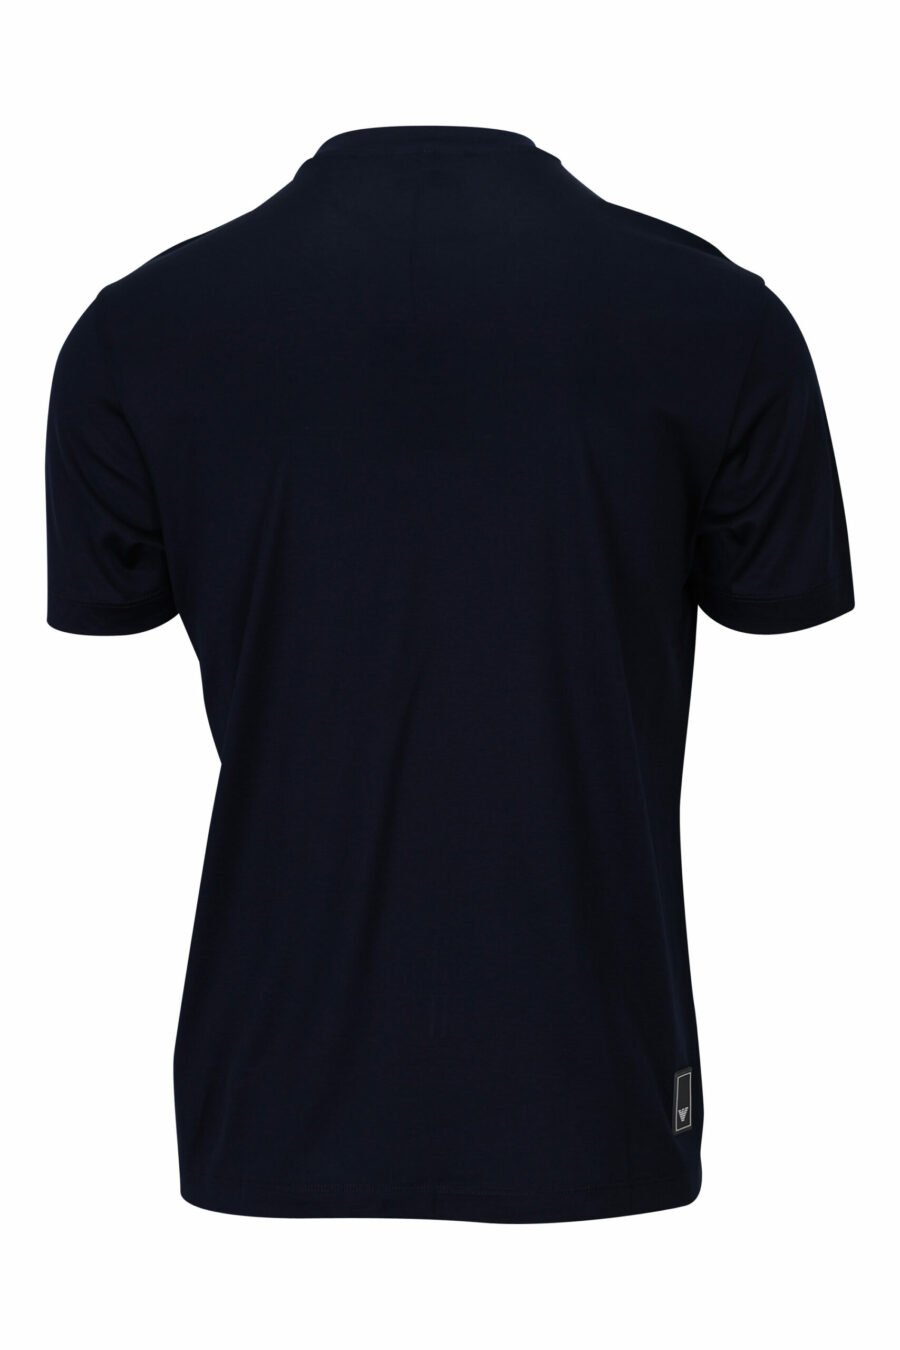 T-shirt bleu marine avec minilogue de l'aigle - 8057767732455 à l'échelle 1